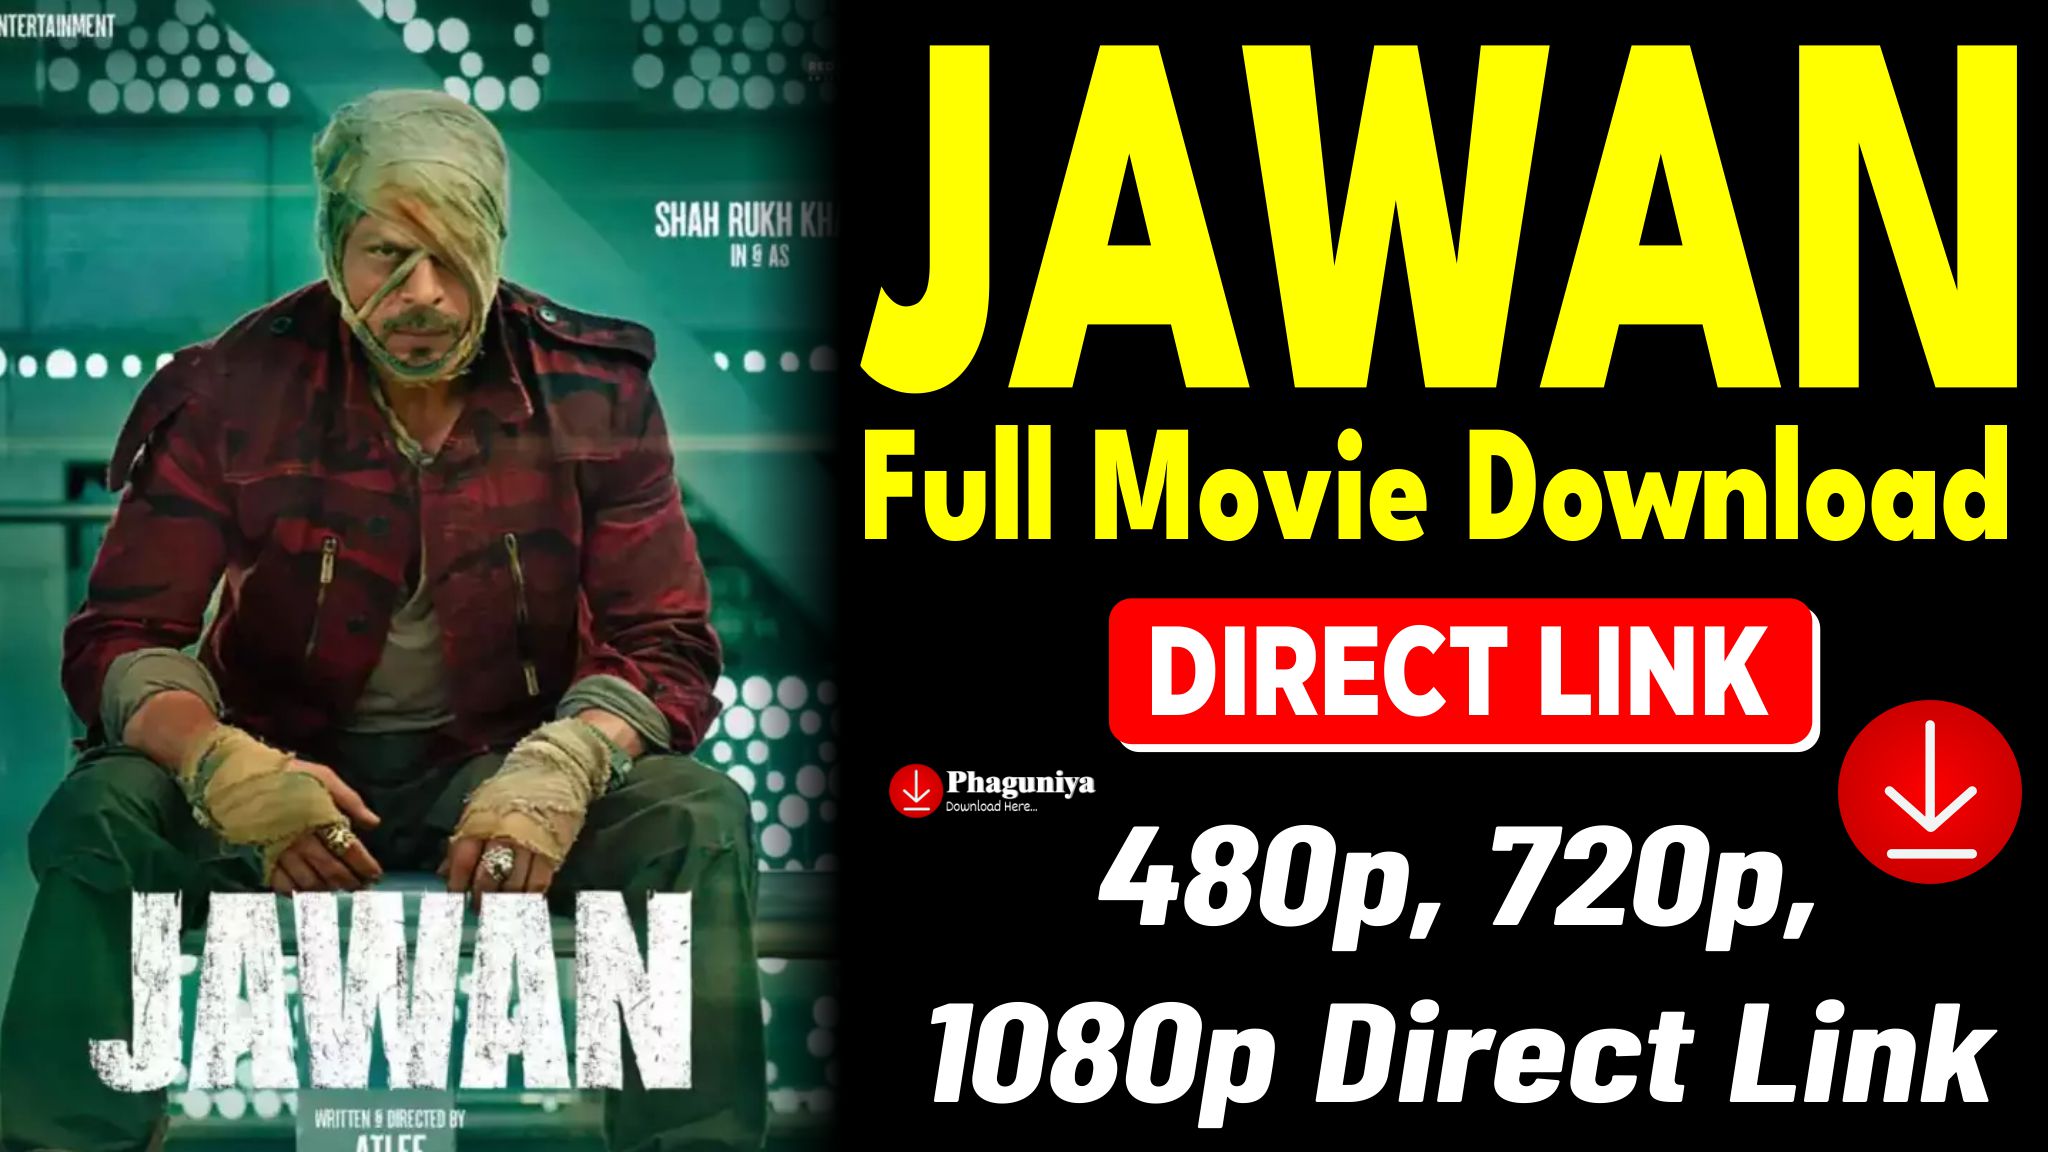 JAWAN FULL MOVIE DOWNLOAD, Jawan Movie